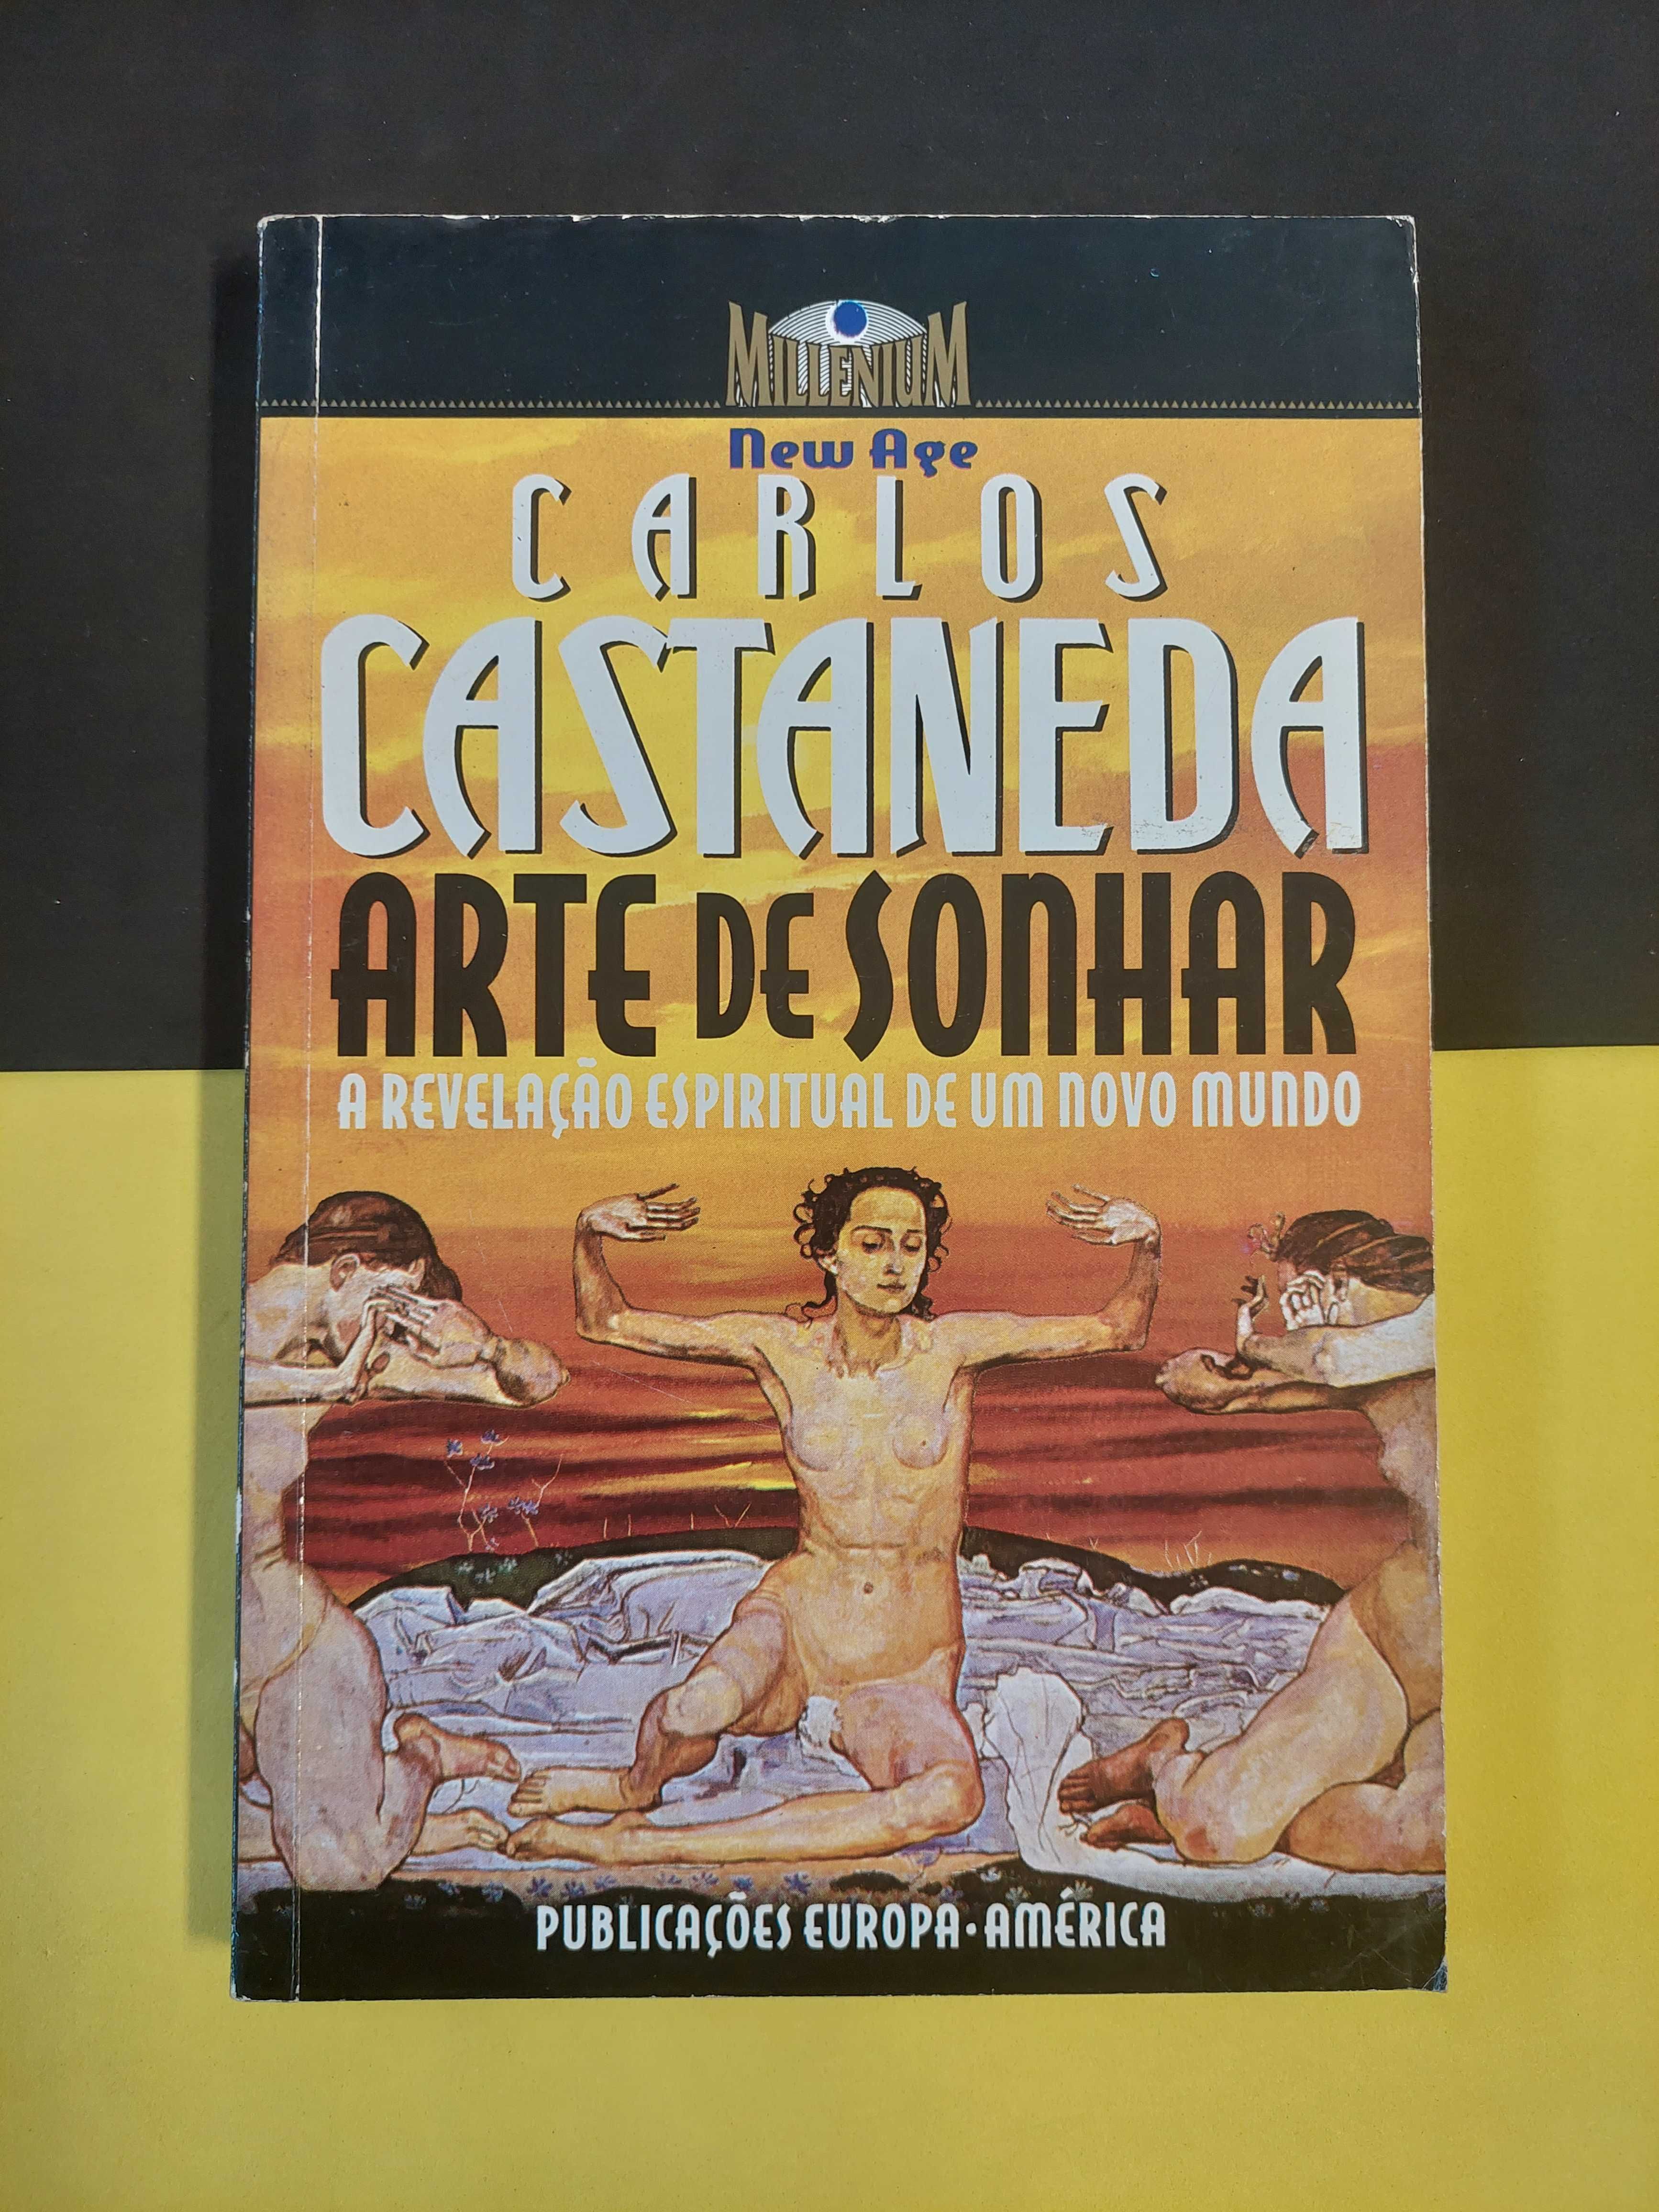 Carlos Castaneda - Arte de sonhar